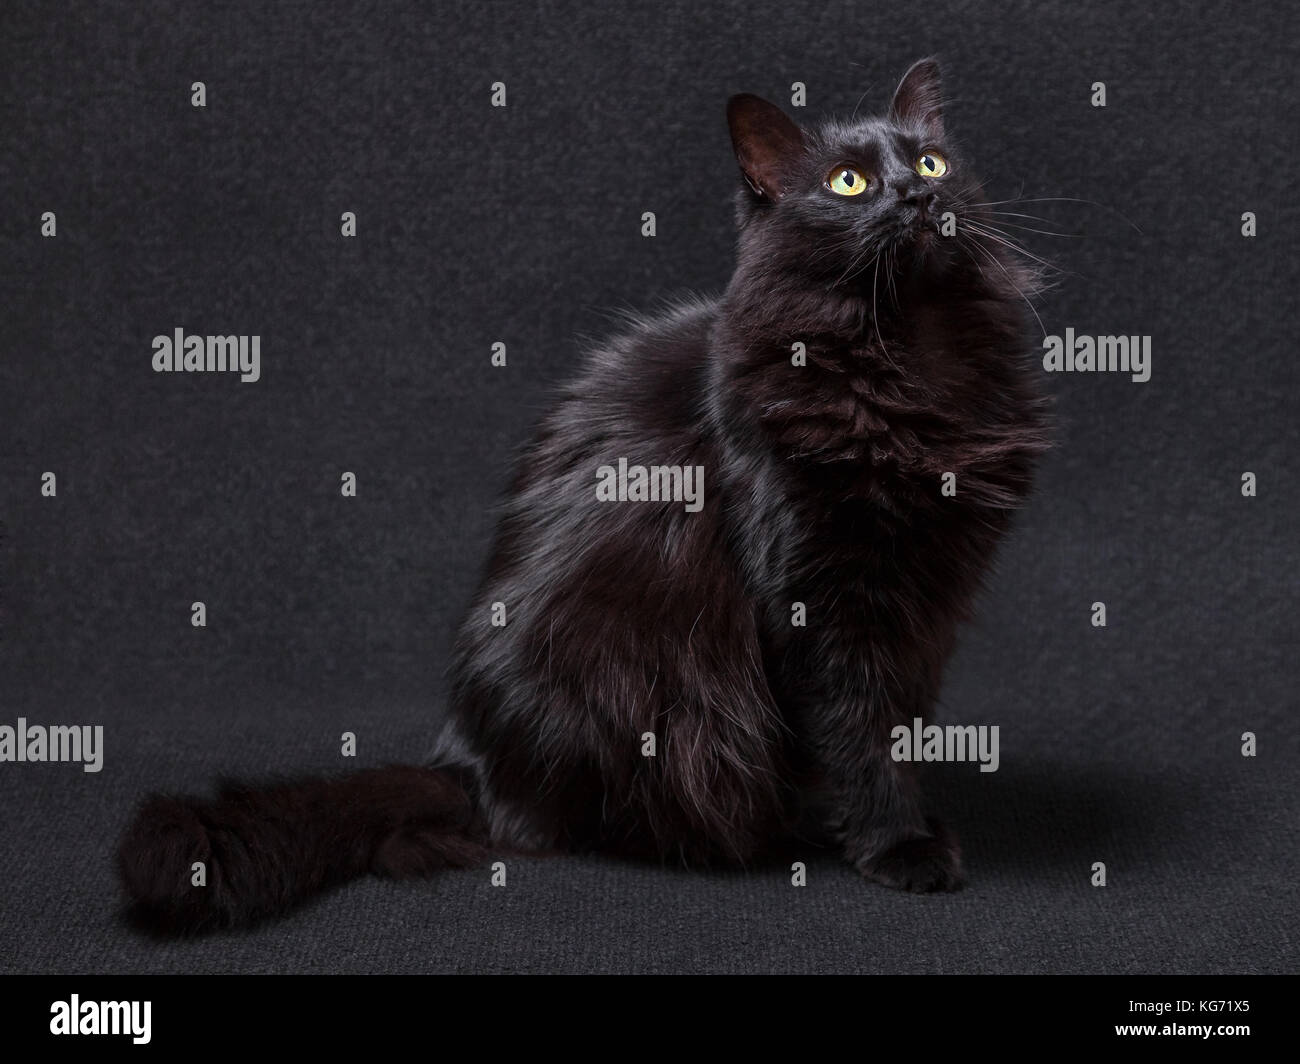 Chat noir assis et jusqu'à la sur un fond sombre, curieux et ciblée. cheveux longs. race Angora turc femelle adultes / chat noir chat noir Banque D'Images